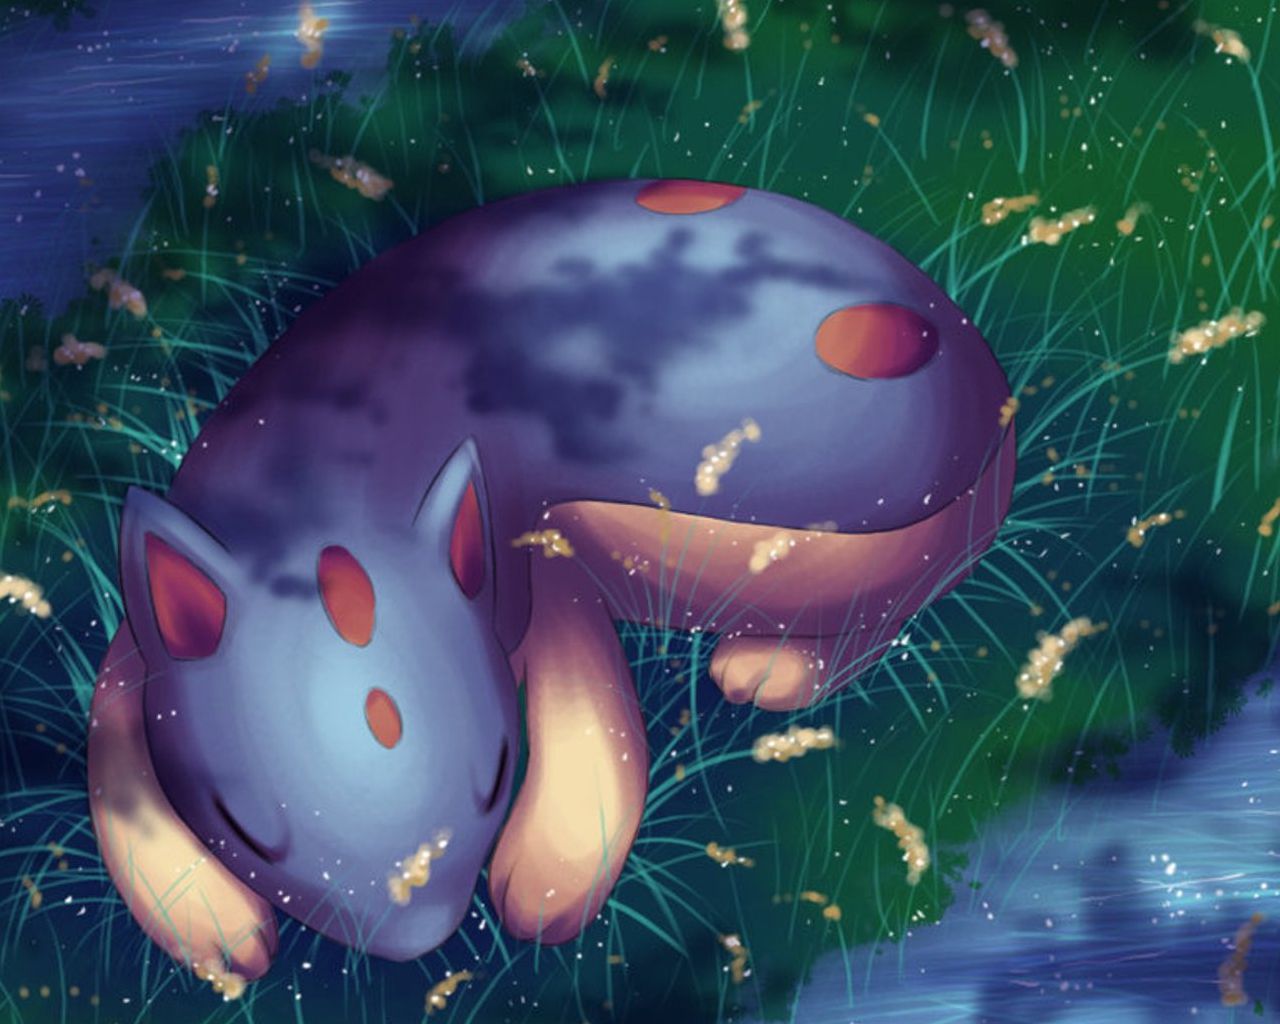 Sweet Dreams - Pokémon Wallpaper (31074513) - Fanpop